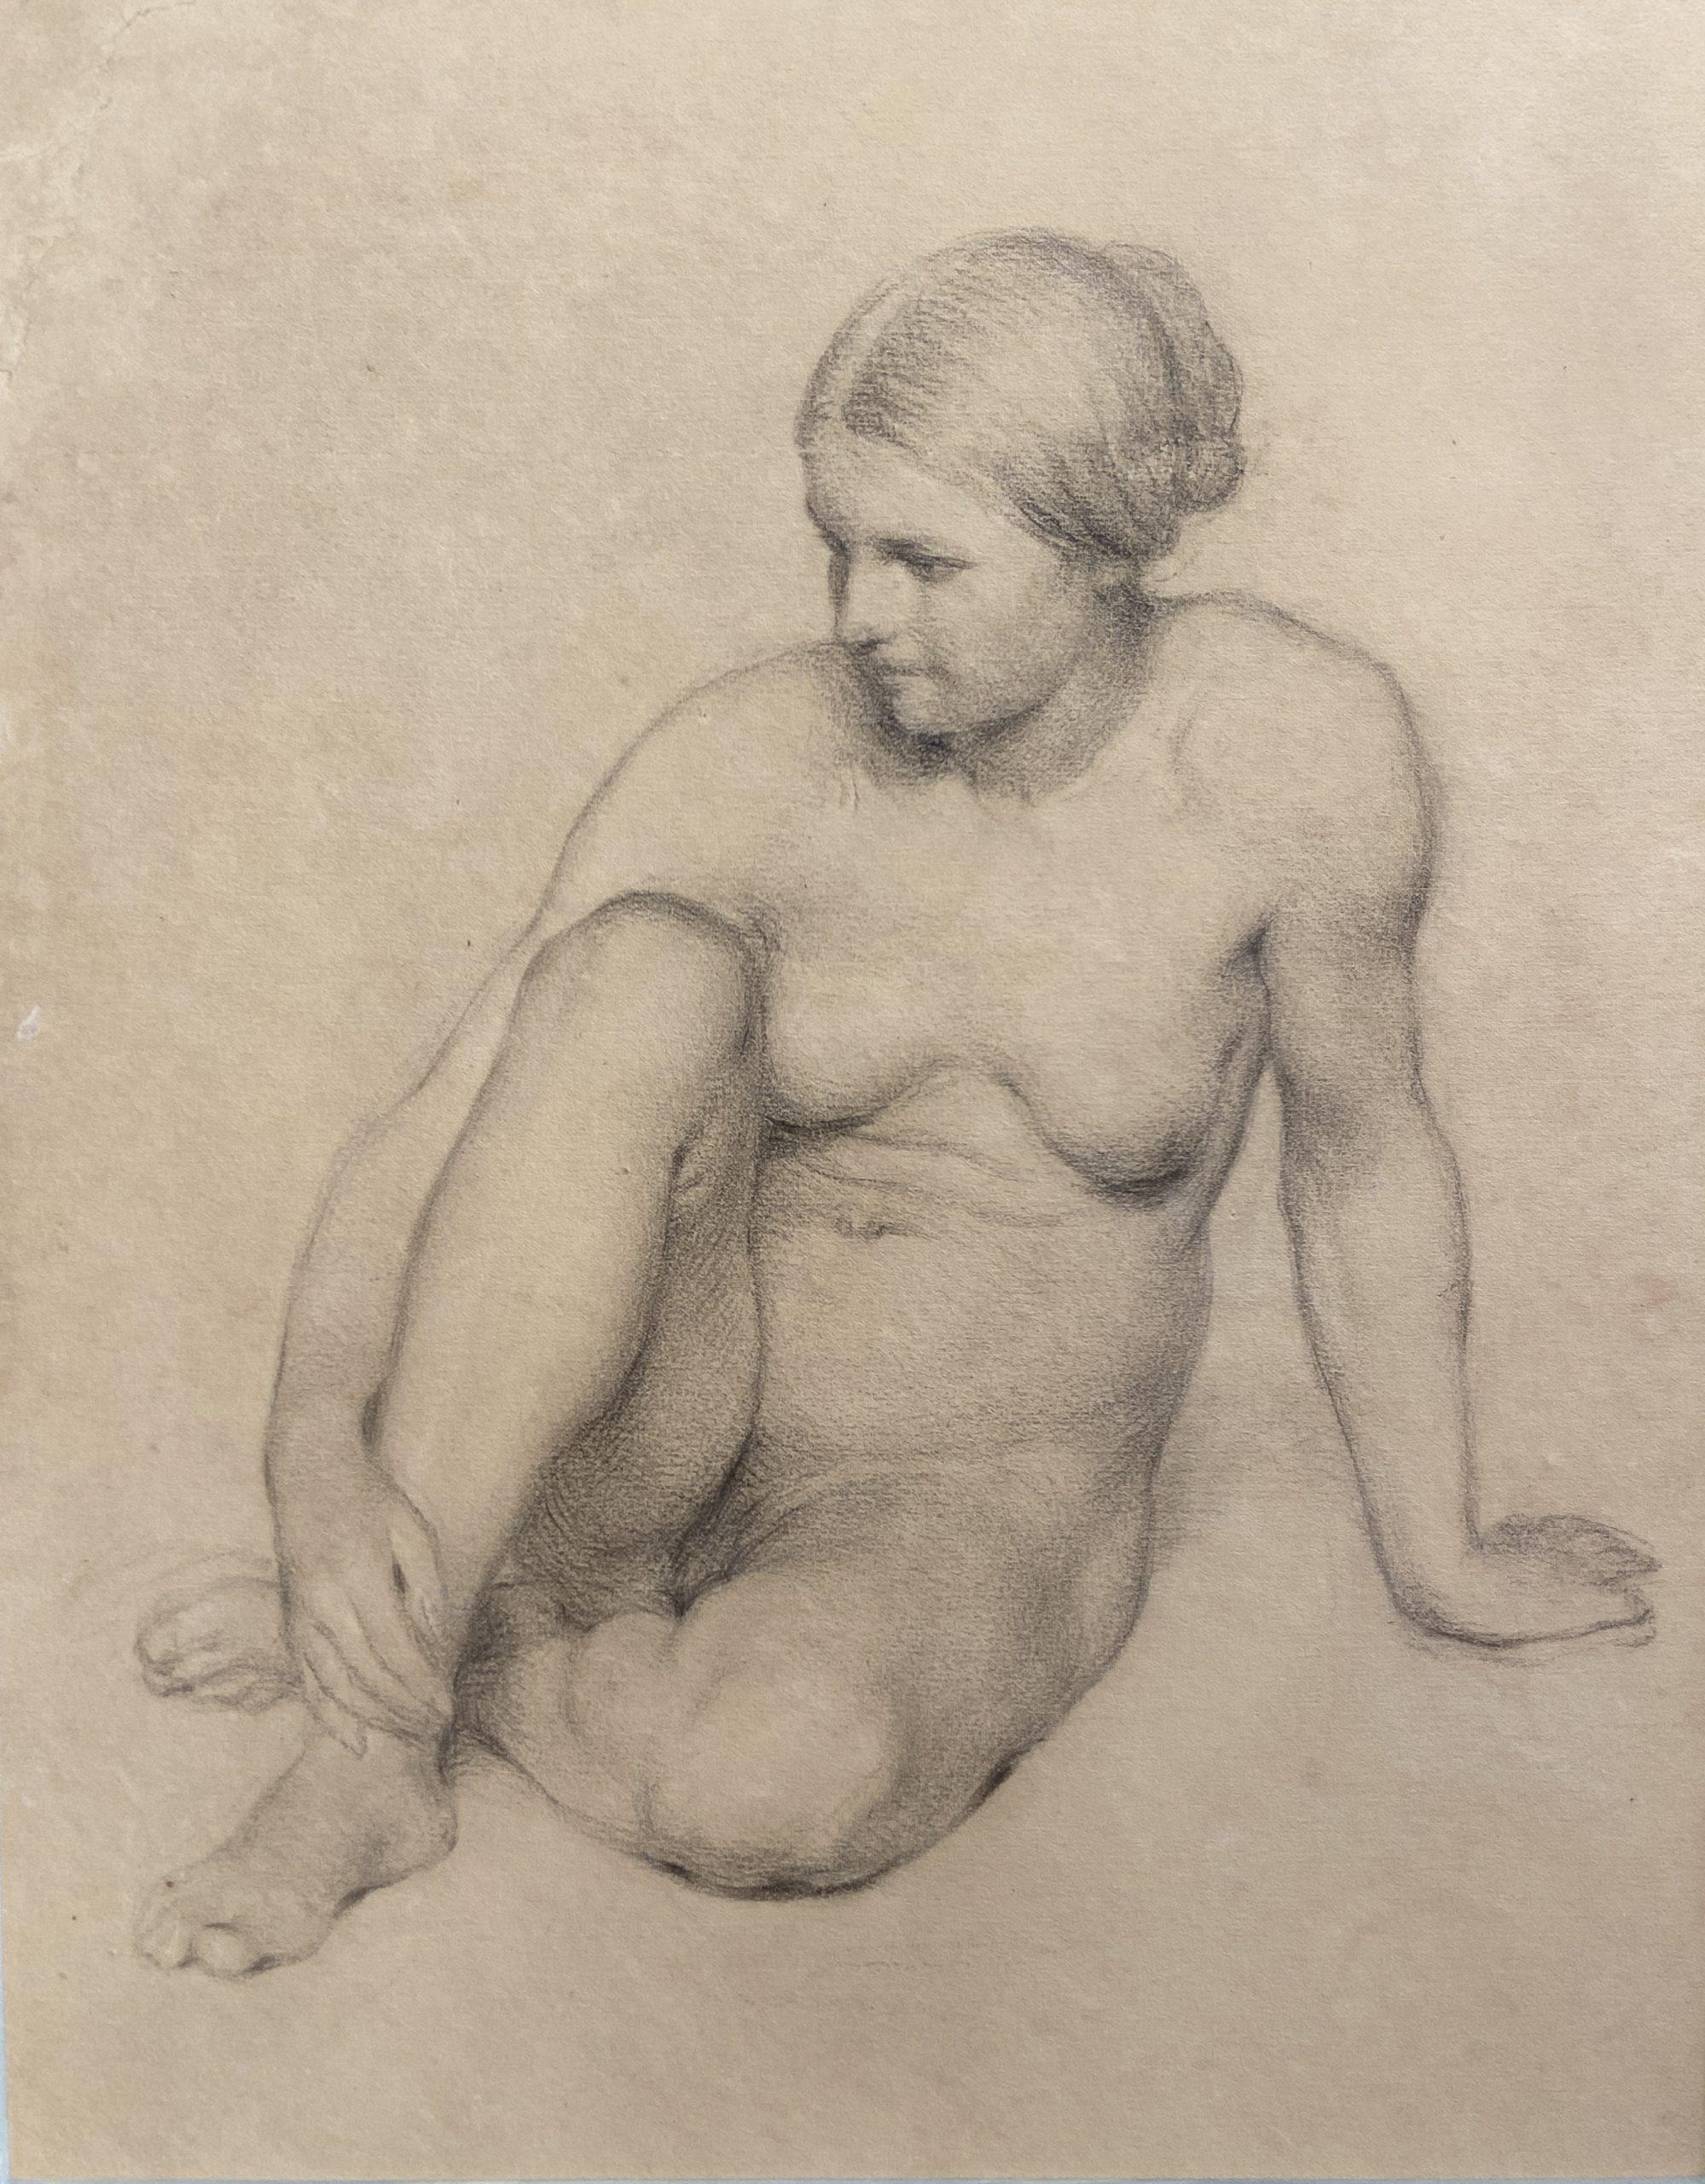 19th century French School Nude – Studie einer sitzenden Frau, Graphitzeichnung, Französische Schule des 19. Jahrhunderts